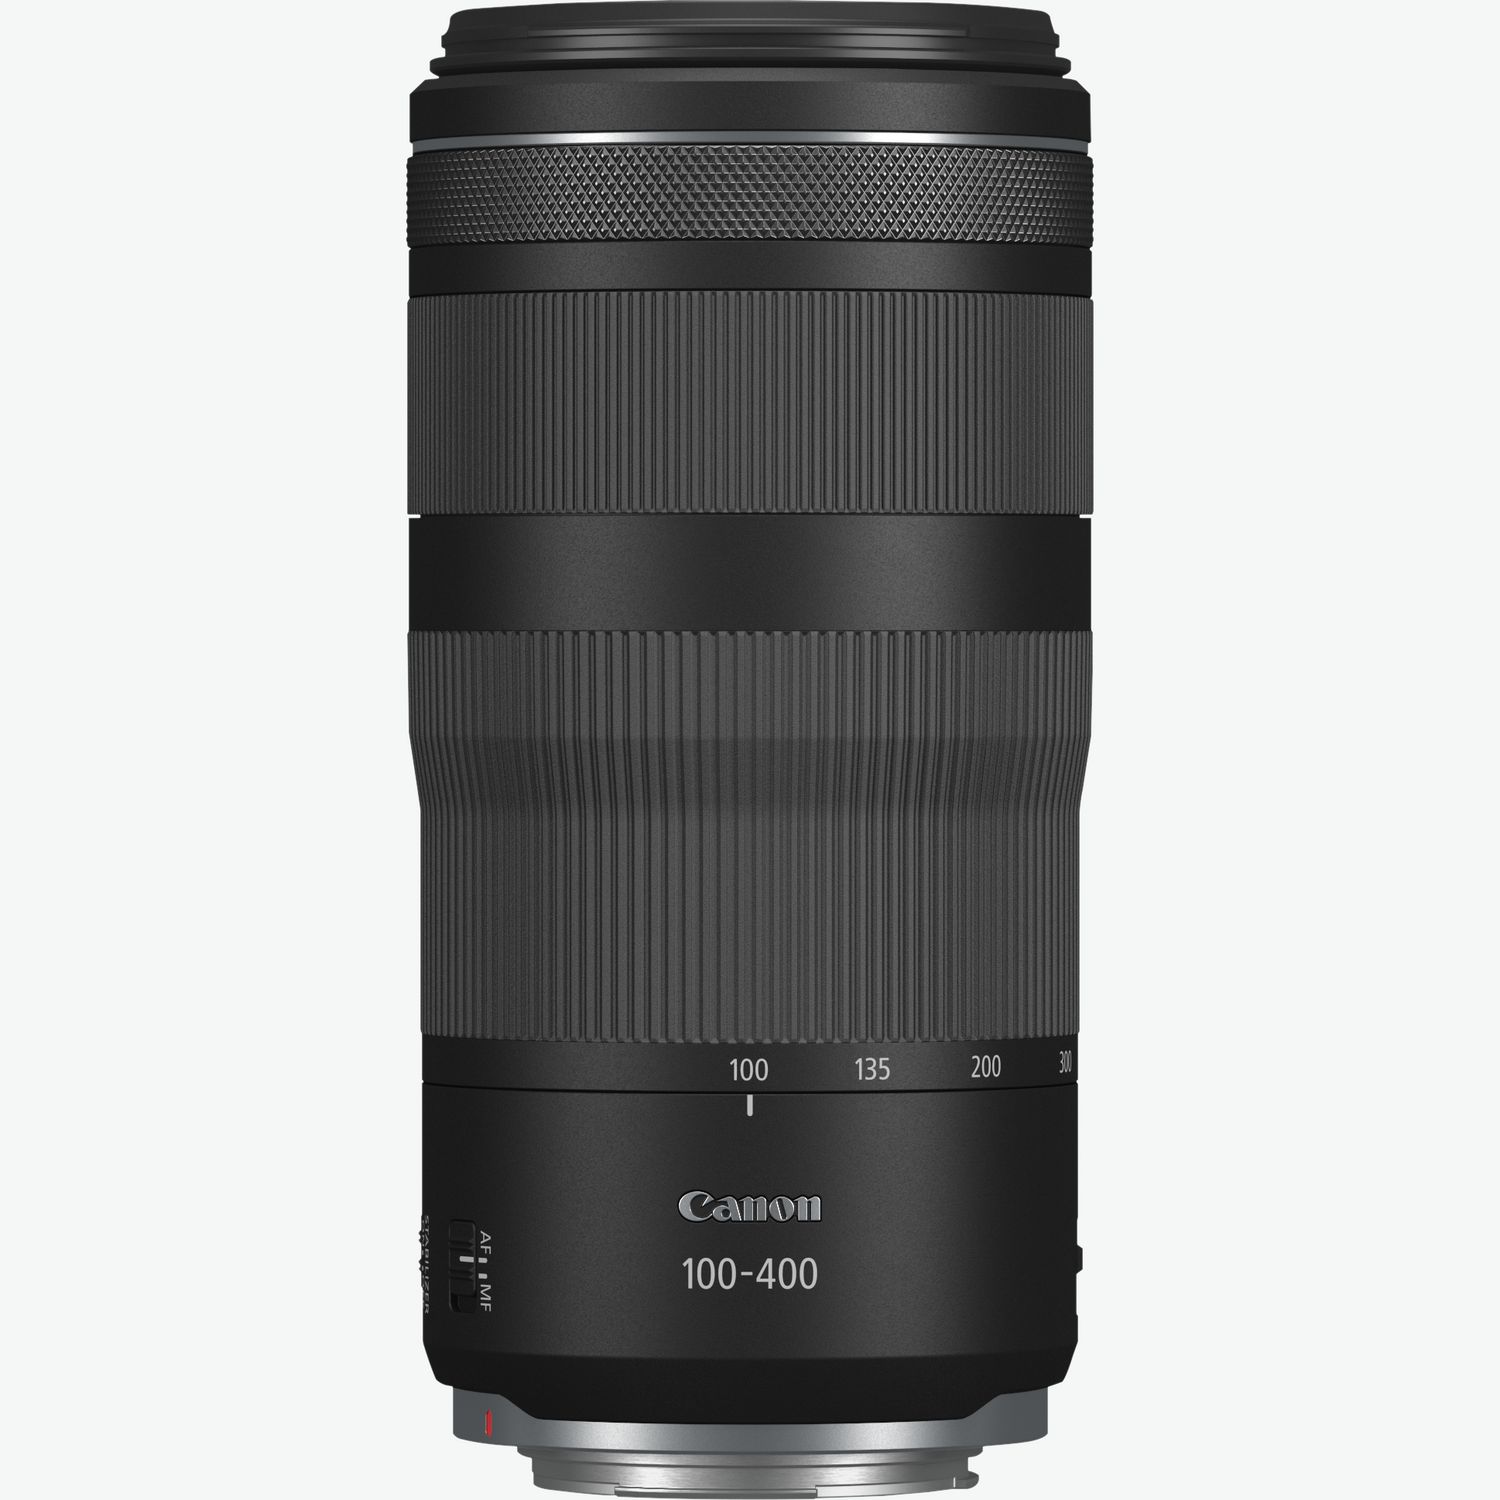 Compra Objetivo Canon EF 70-300 mm f/4-5.6 IS II USM — Tienda Canon Espana